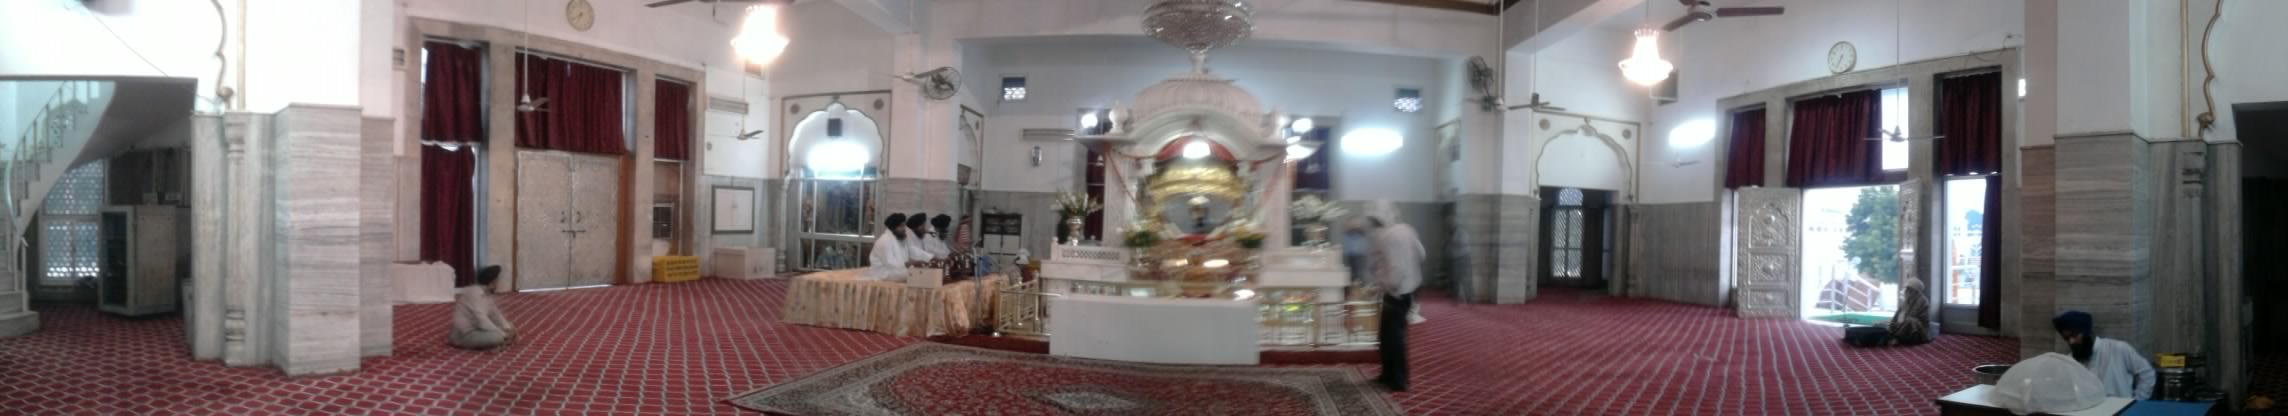 Panoramic view inside Gurdwara Rakab Ganj Sahib